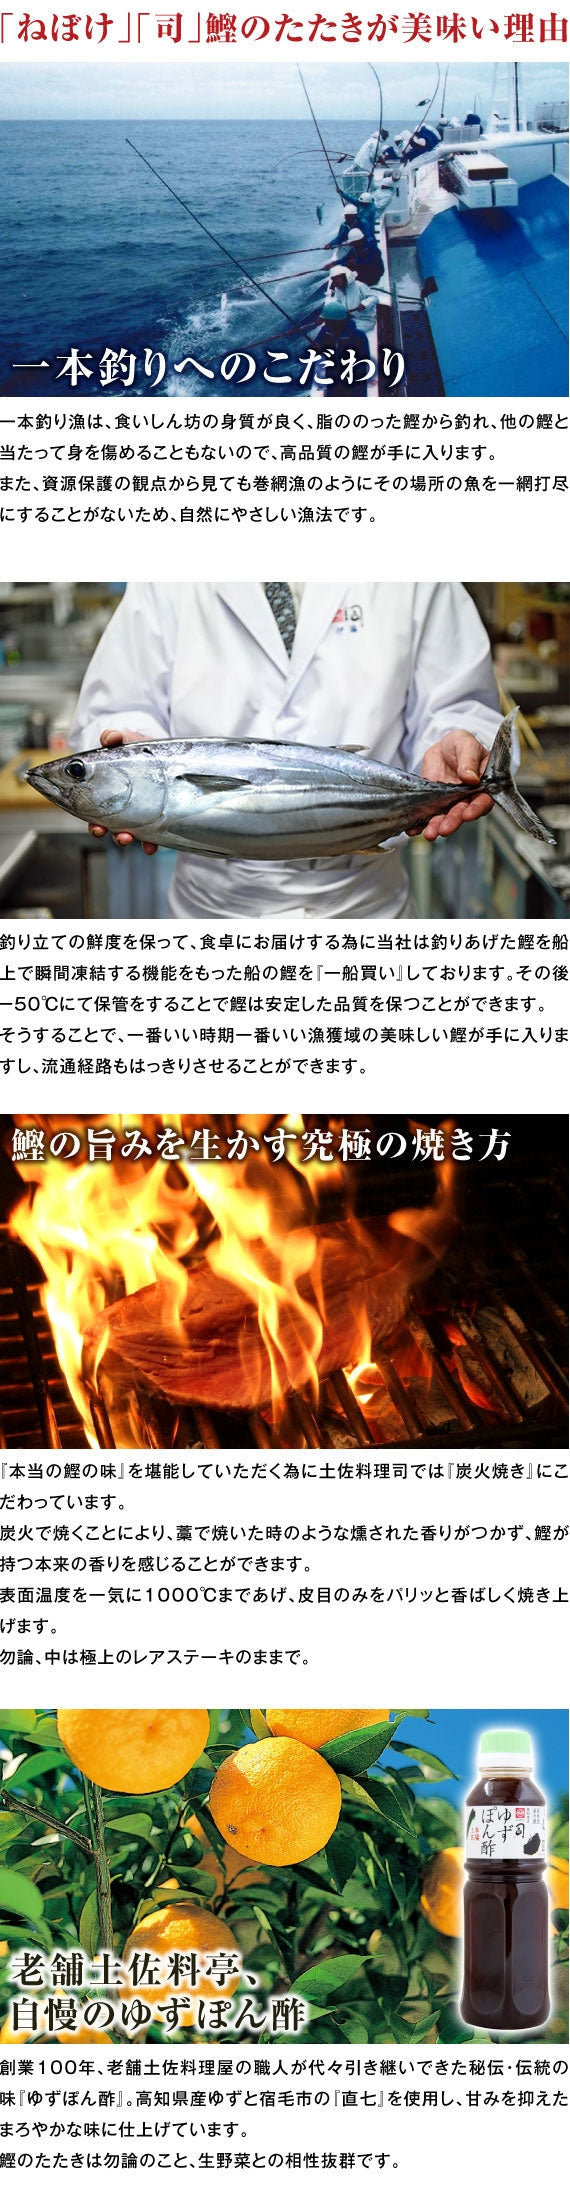 土佐料理 司「鰹のたたきと大吟醸酒 土佐鶴『天平』のセット」(000177)